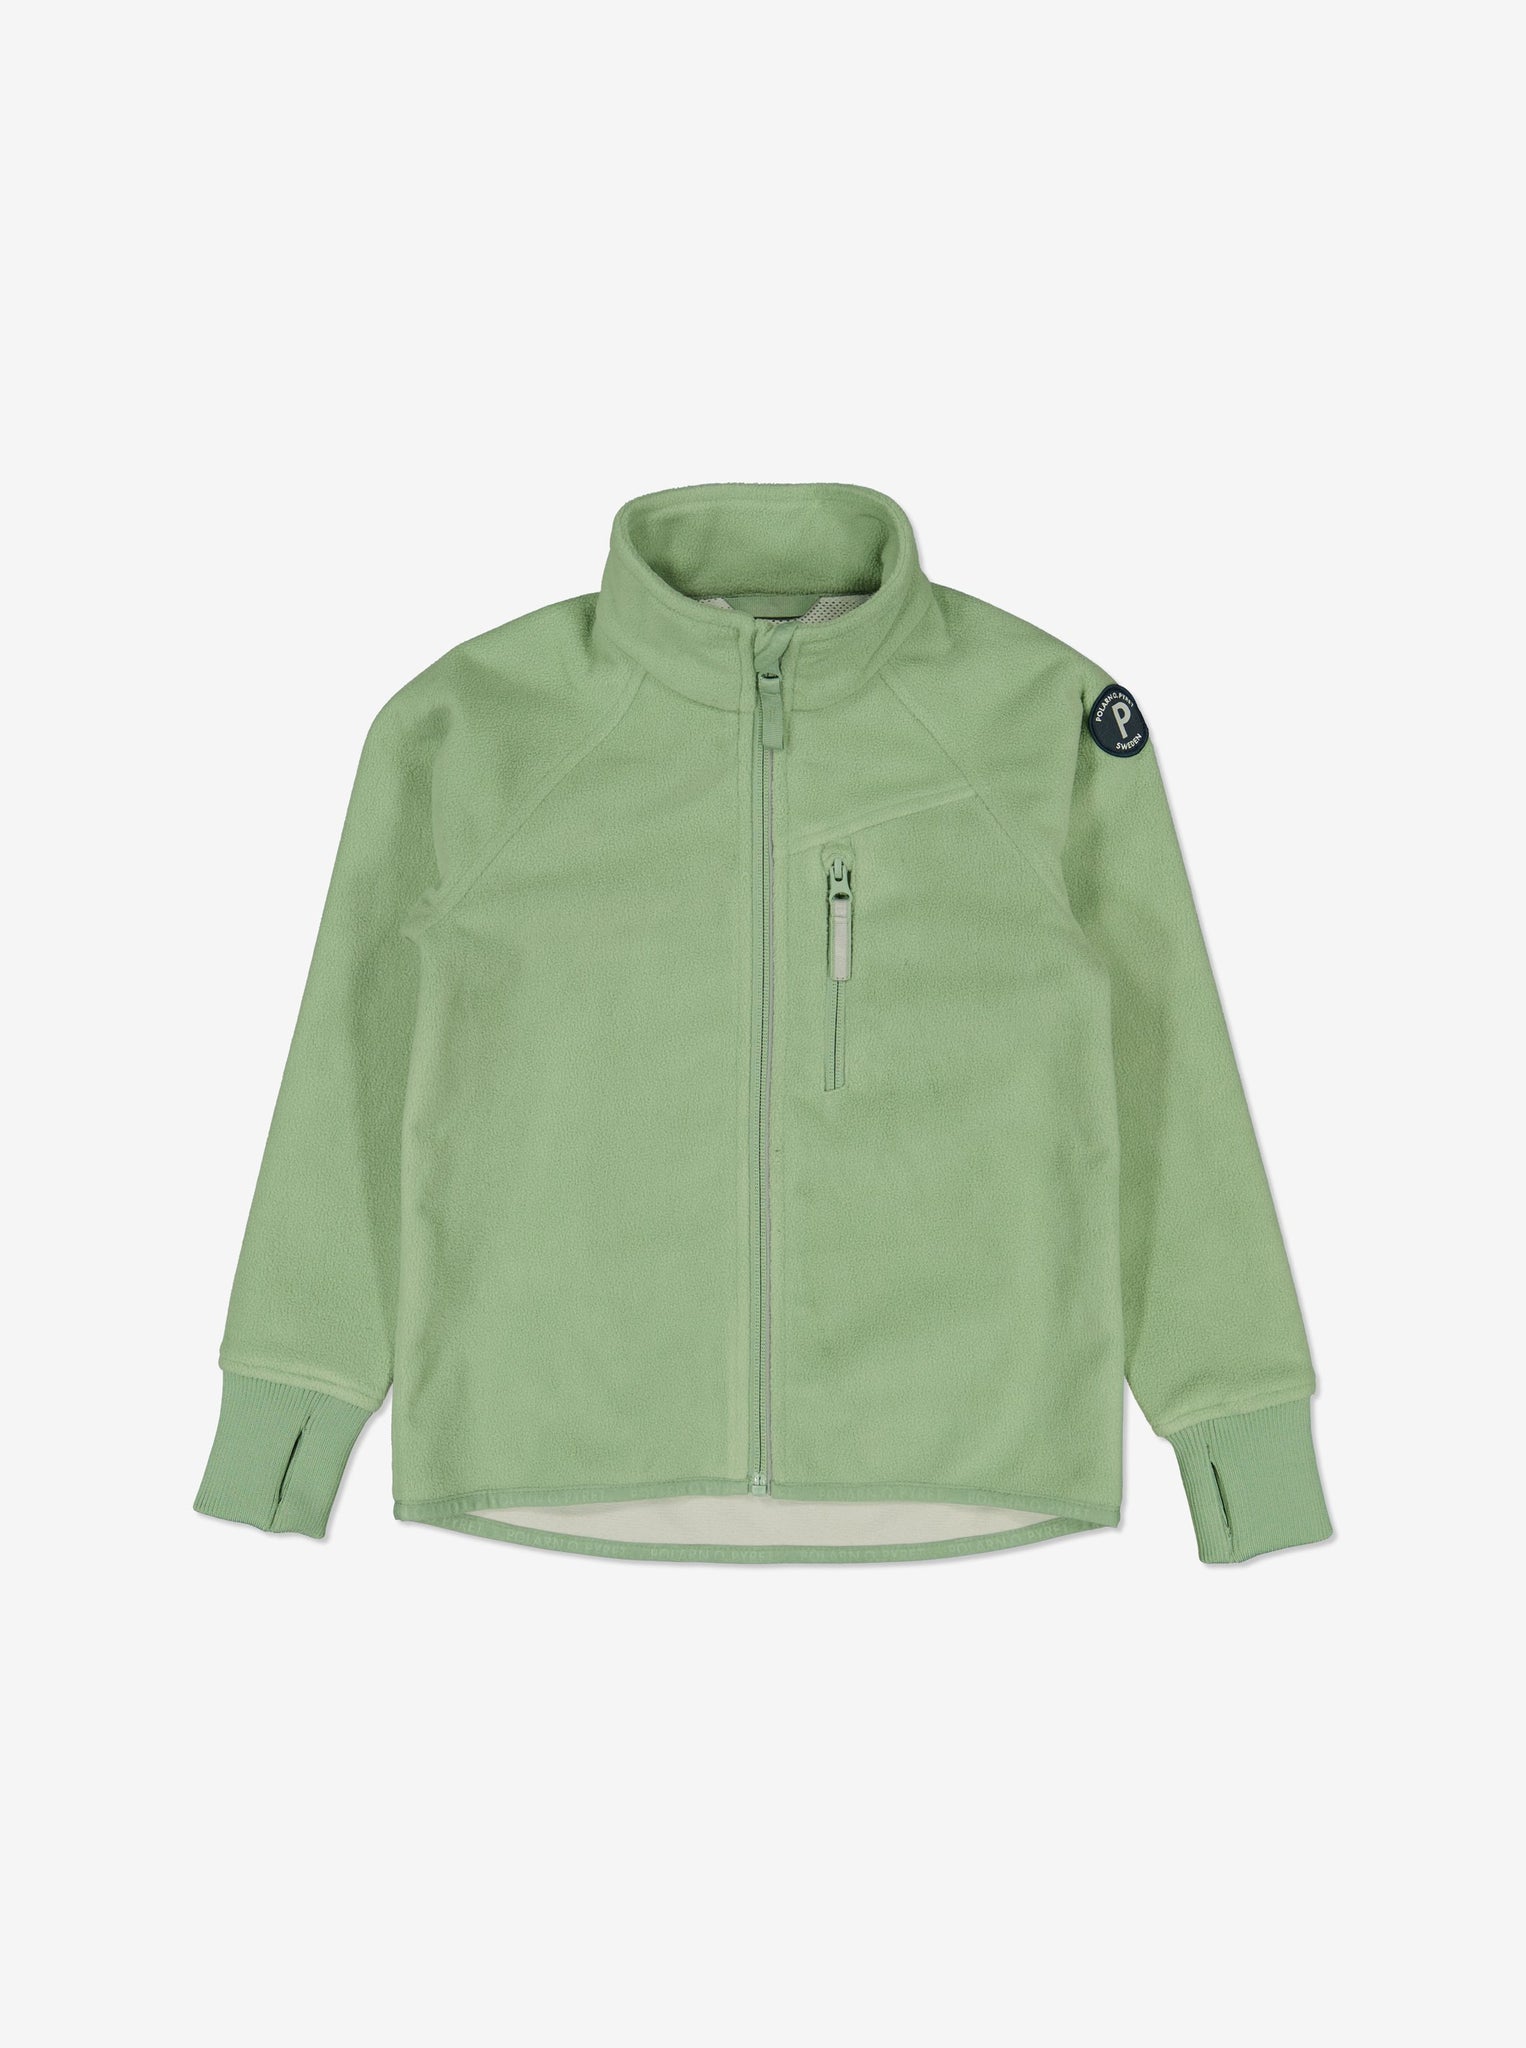 Green Kids Showerproof Fleece Jacket from Polarn O. Pyret Kidswear. Quality Kids Fleece Jacket